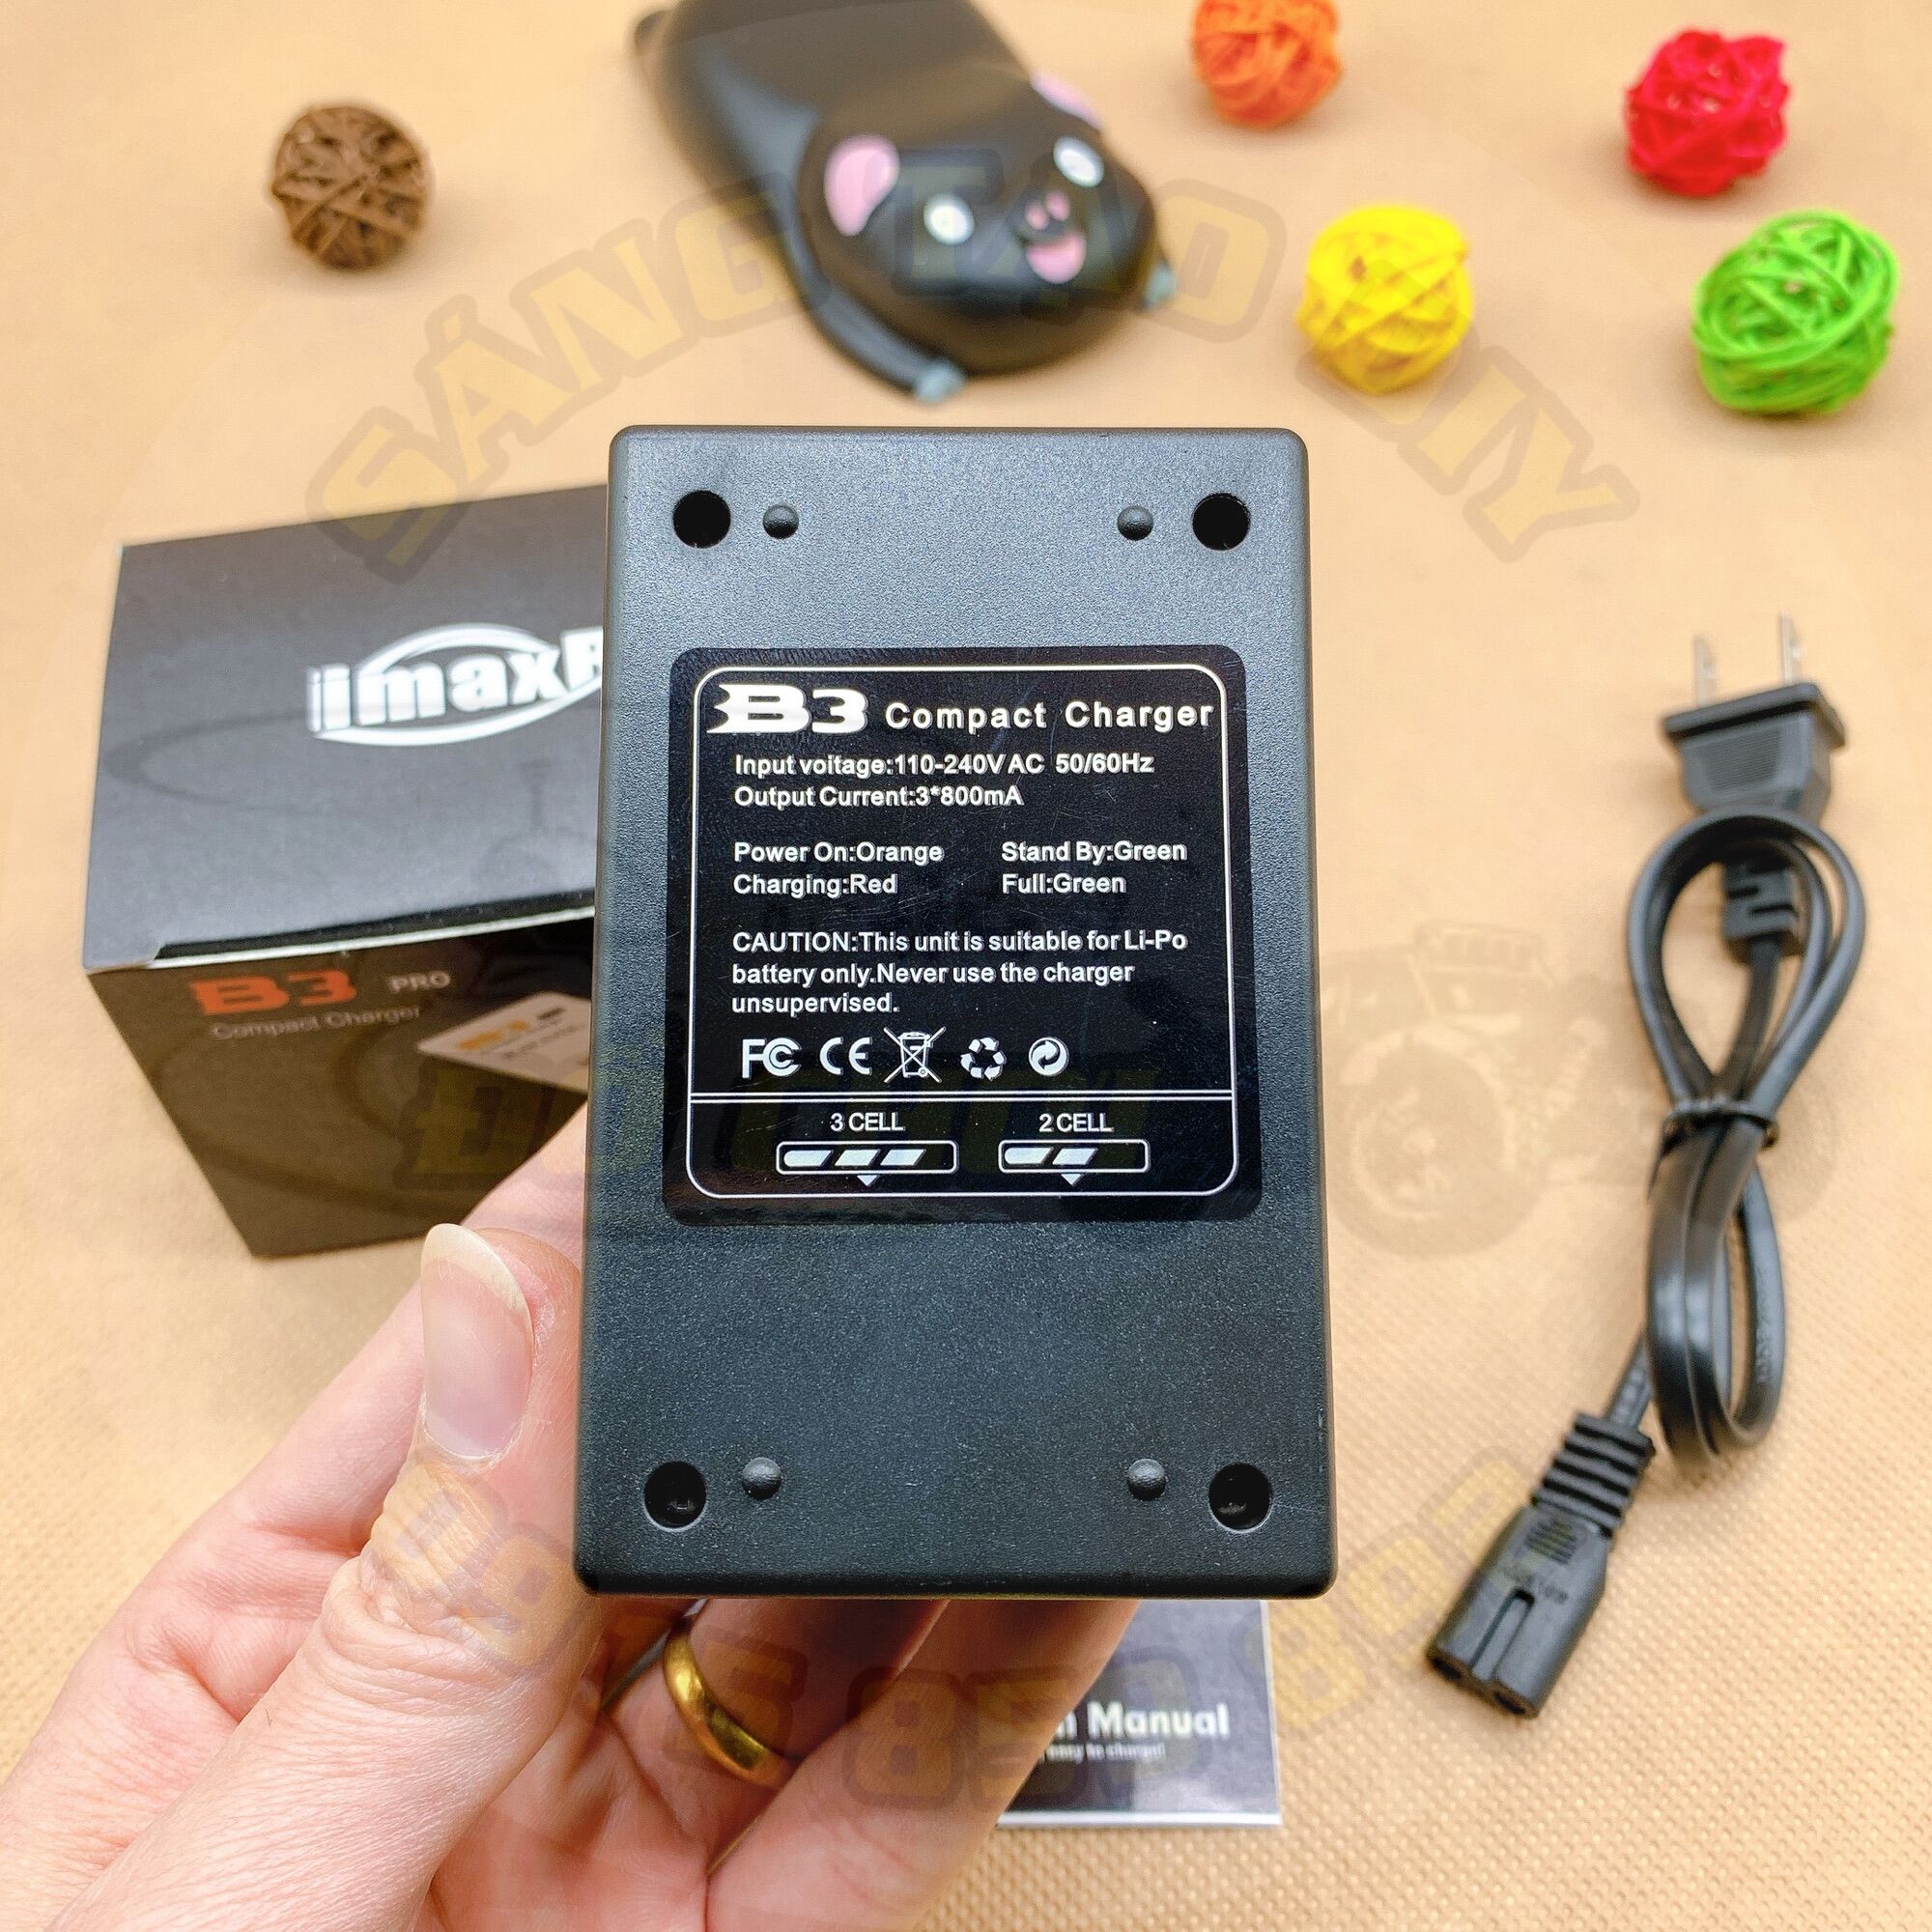 Sạc b3 pro imaxrc 800ma - sạc cân bằng pin lipo 2s 7.4v - 3s 11.1v - ảnh sản phẩm 6